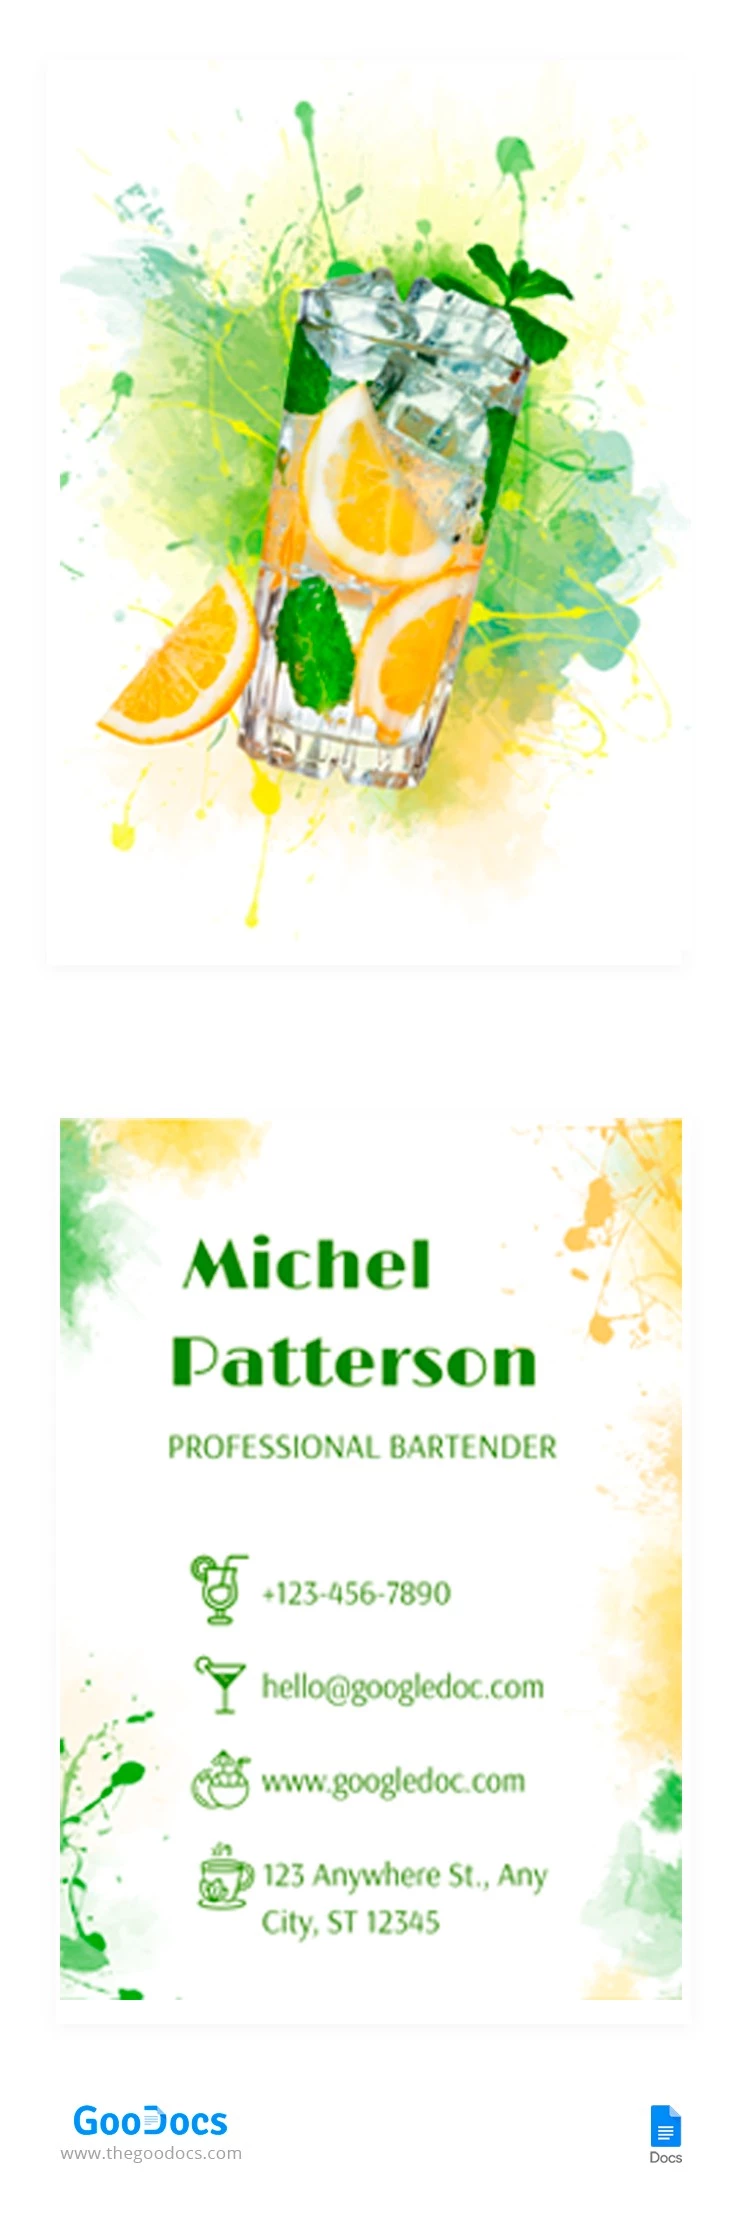 Cartão de visita colorido do bartender - free Google Docs Template - 10065173